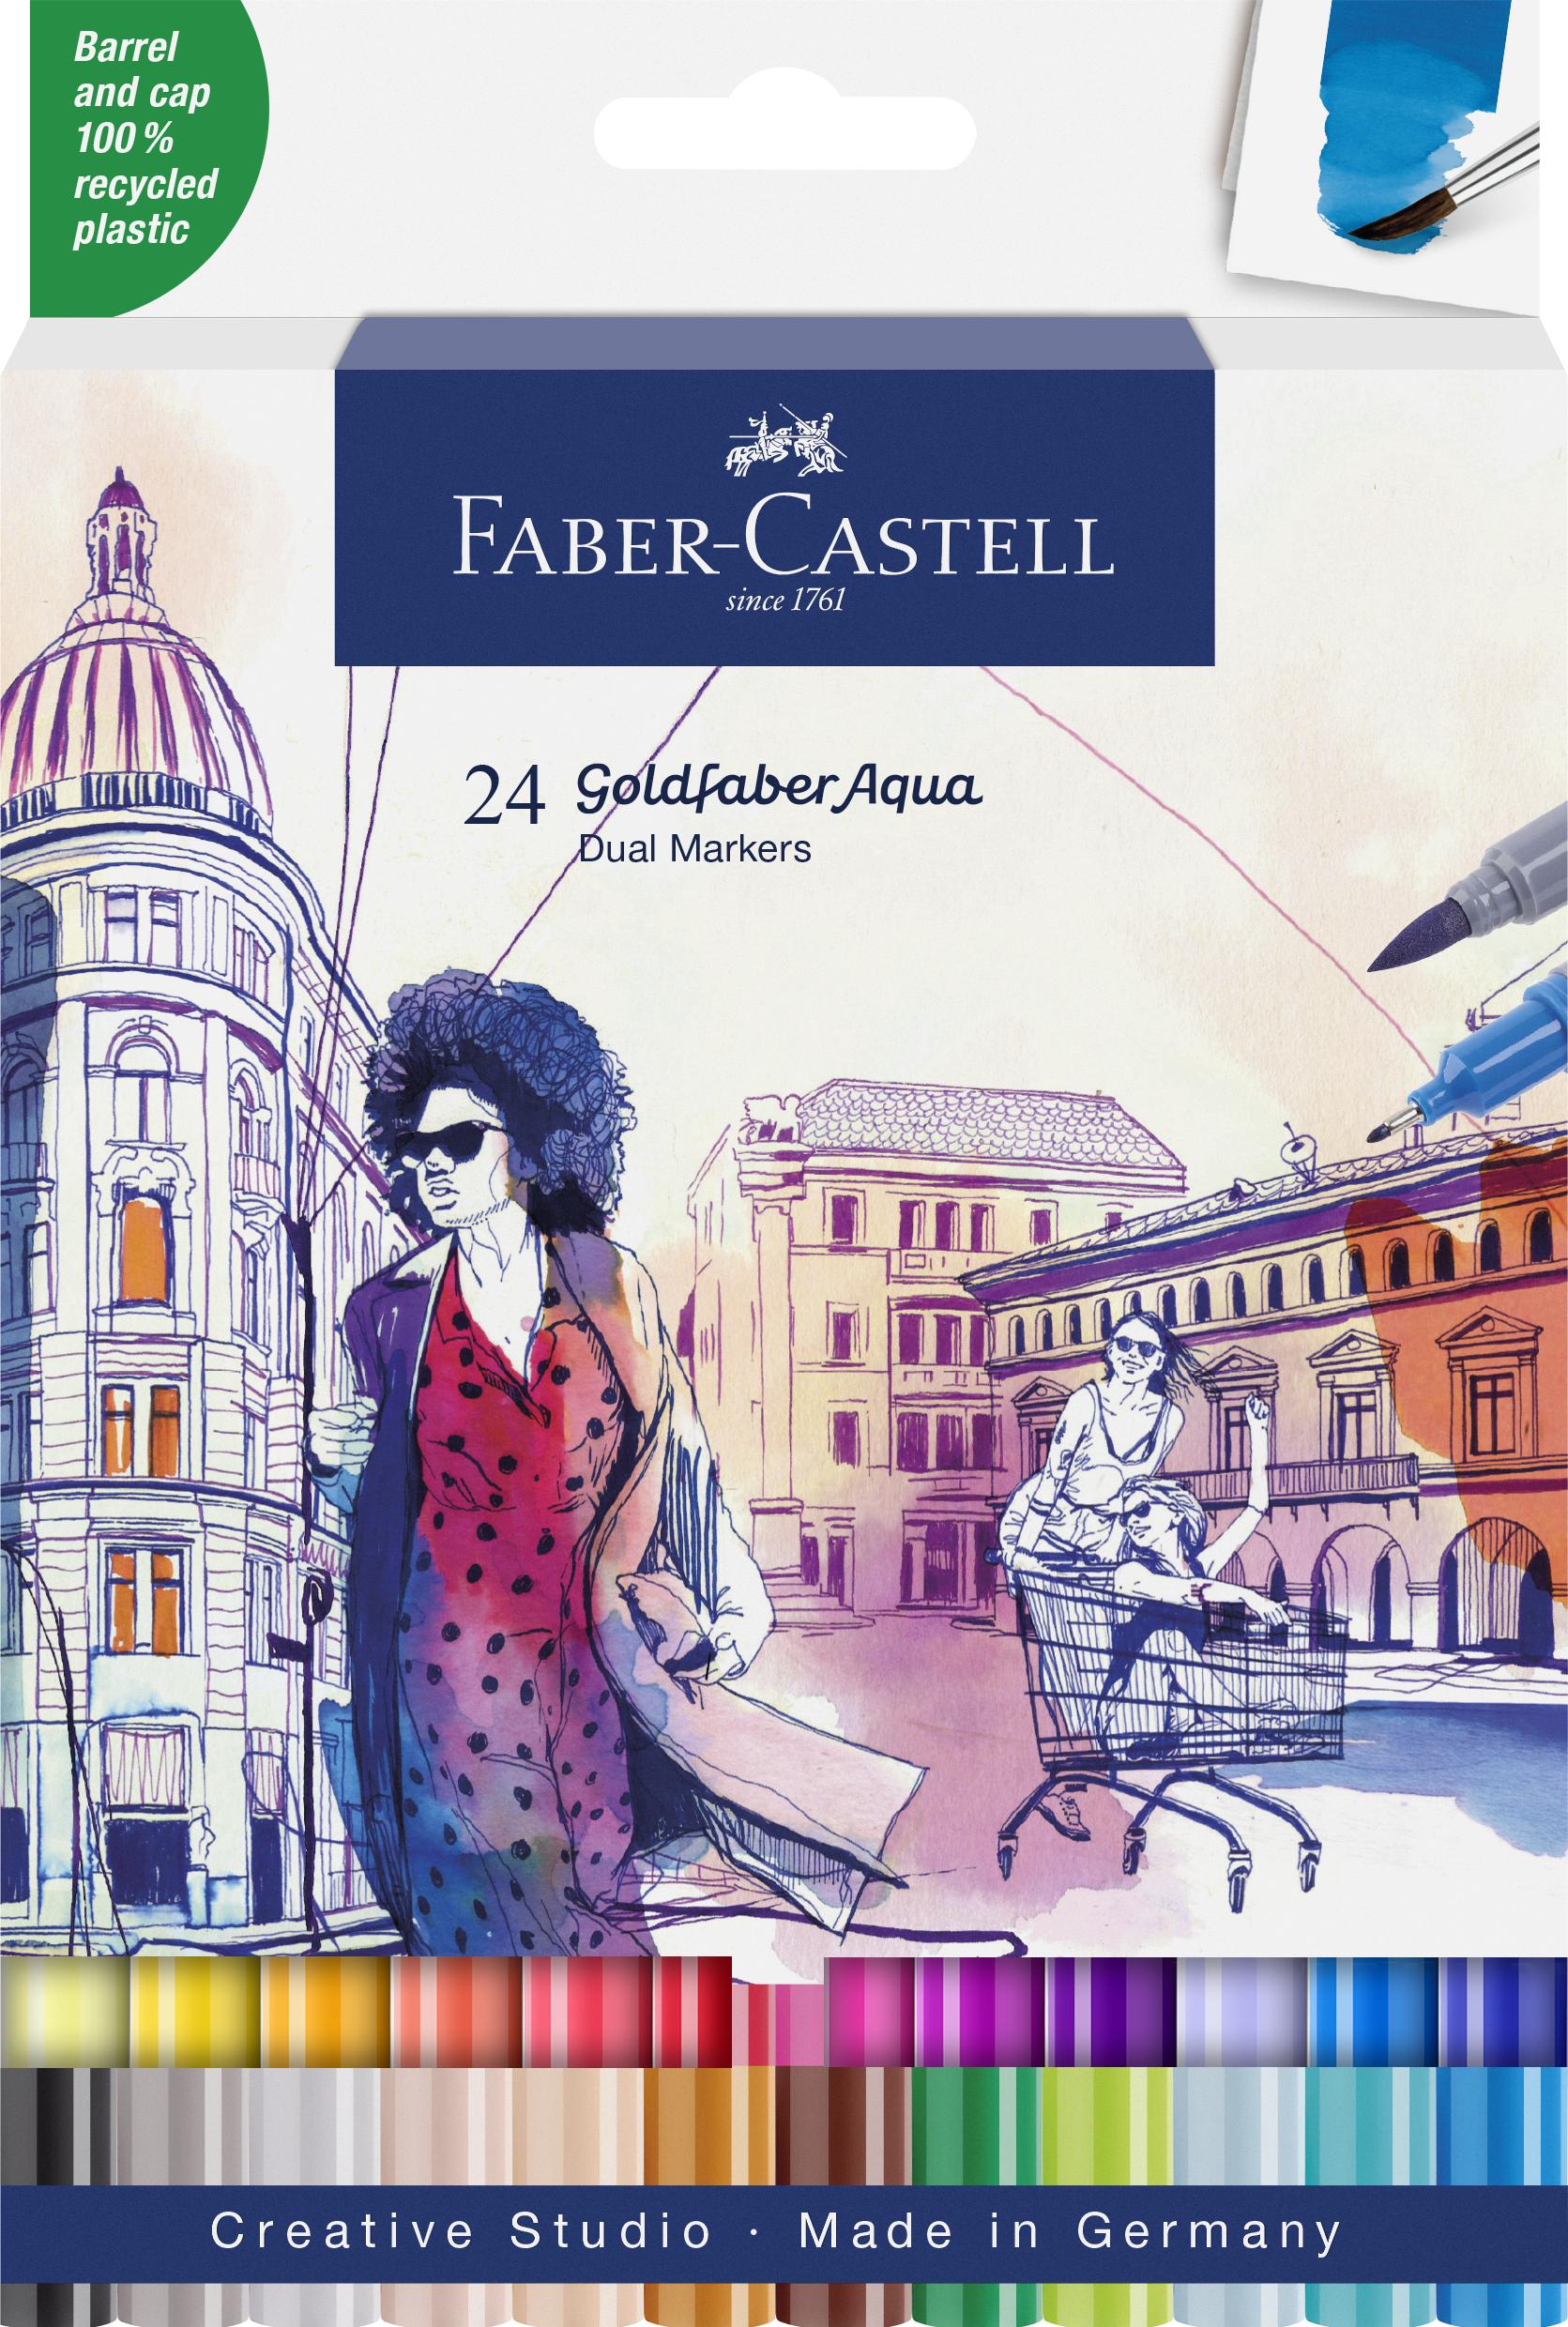 Faber-Castell - Gofa Aqua Dual Marker wallet (24 pcs) (164624)